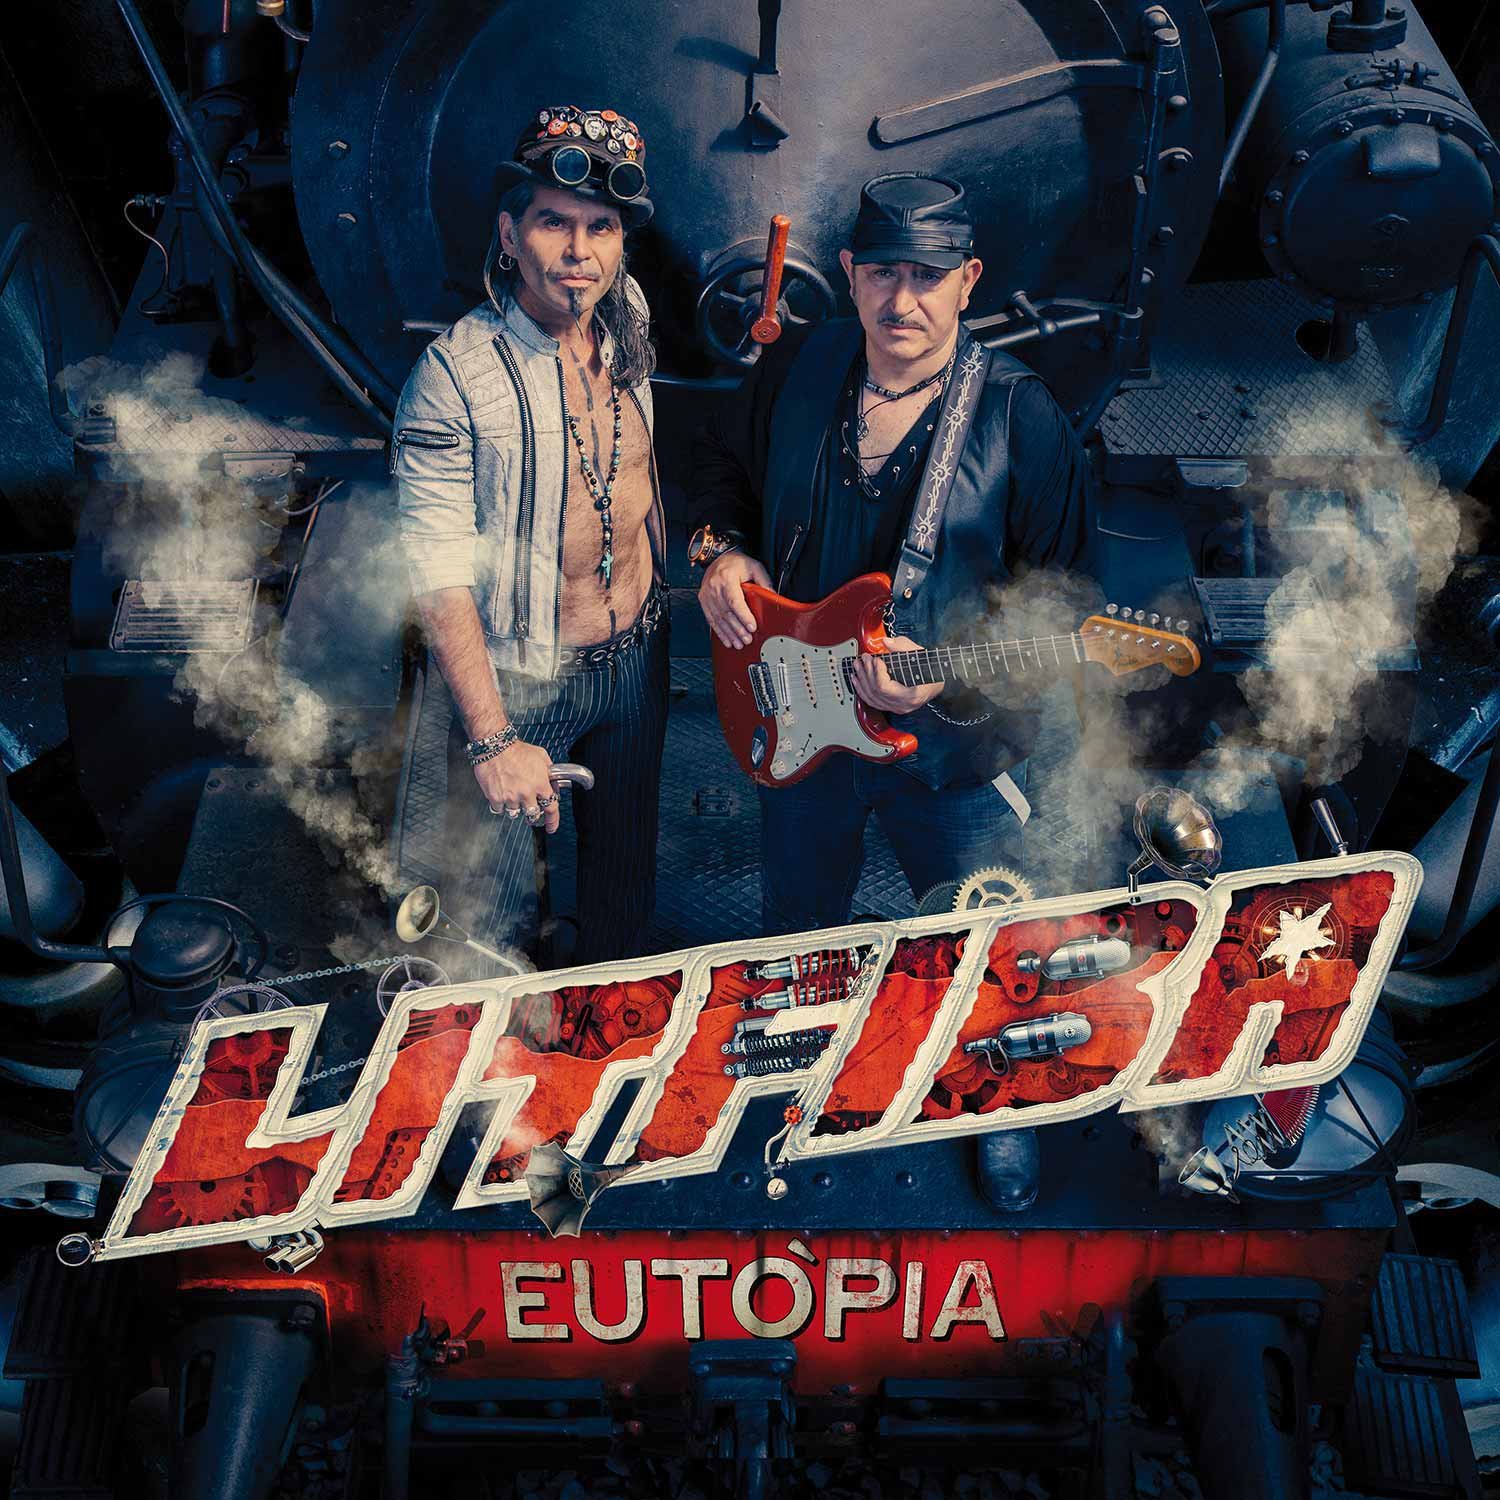 Continua il successo di “Eutopia”, l’ultimo disco dei Litfiba